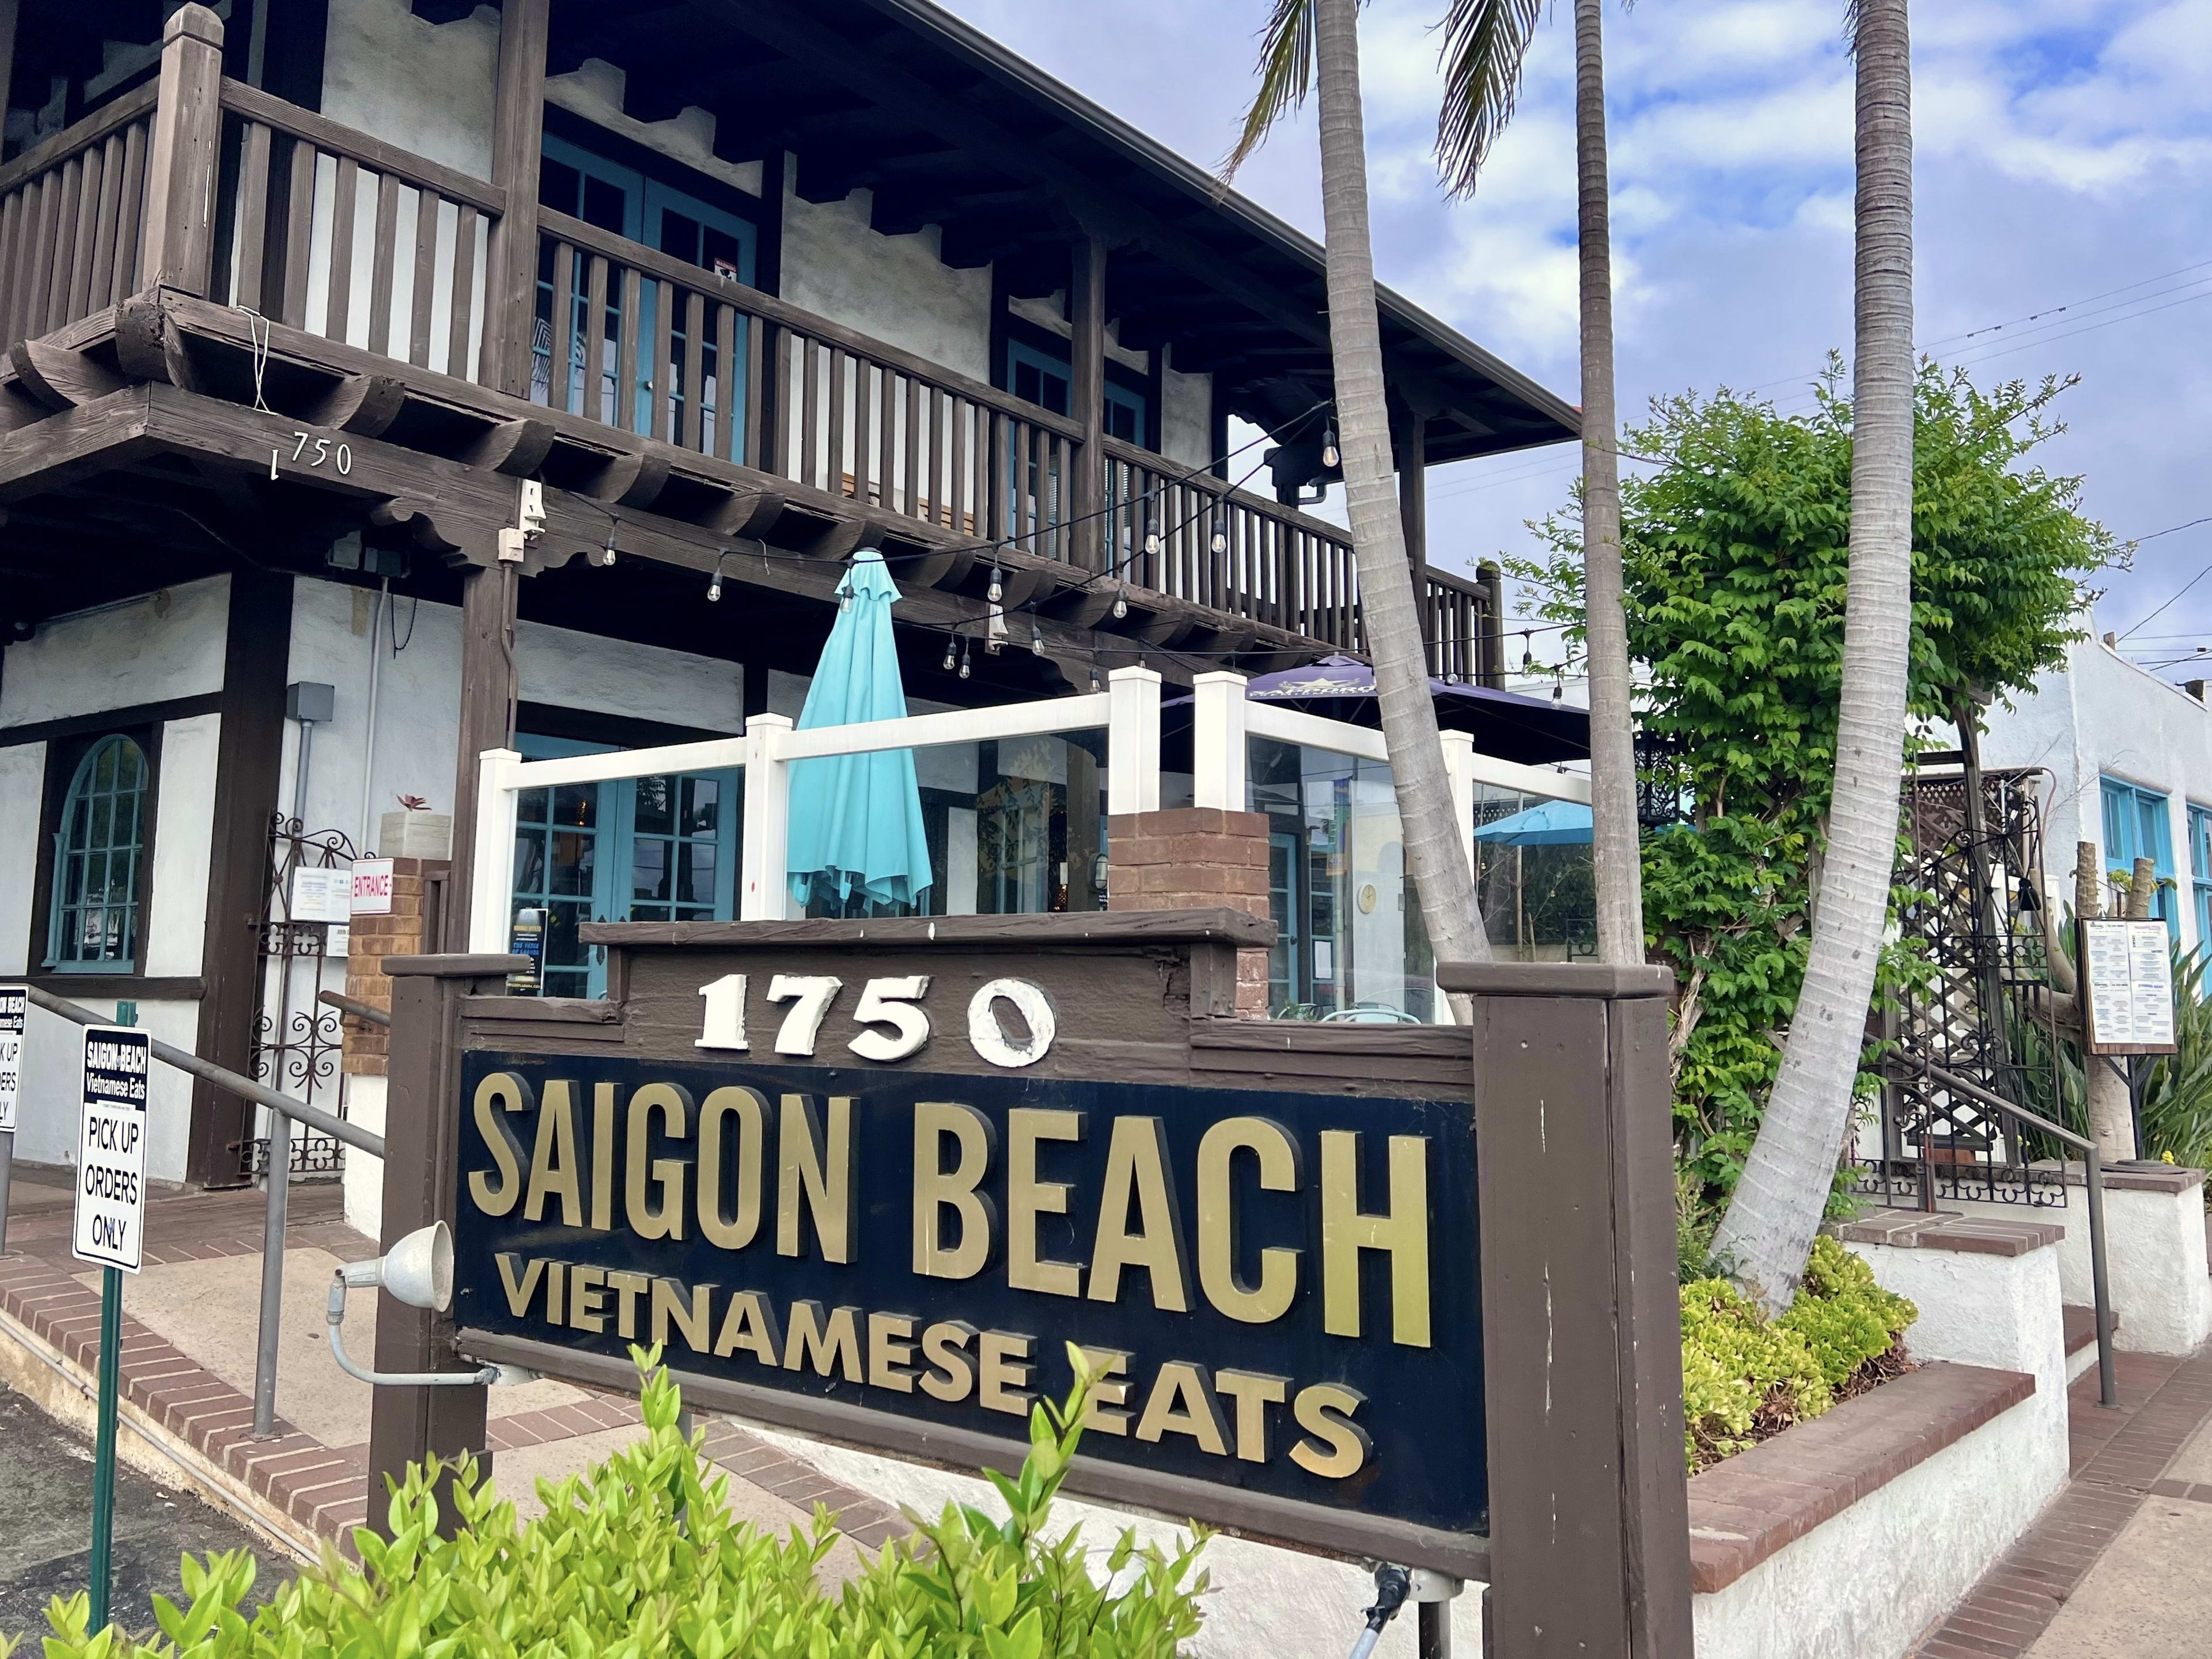 The exterior sign for Saigon Beach Vietnamese Eats